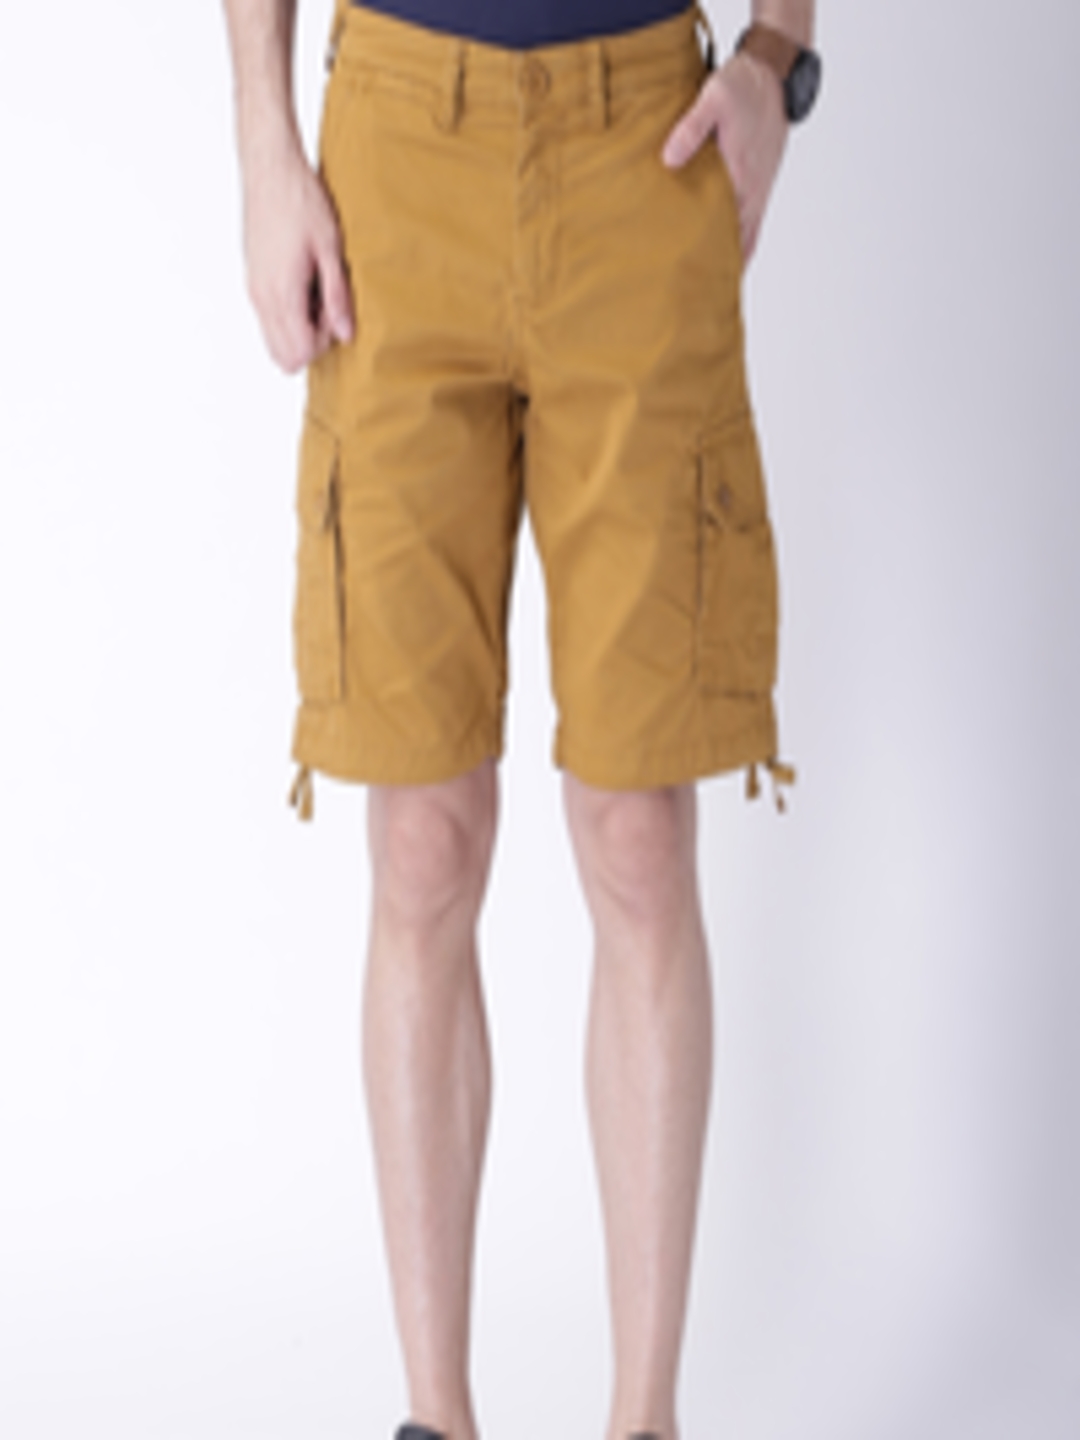 Buy Moda Rapido Brown Cargo Shorts - Shorts for Men 1378950 | Myntra